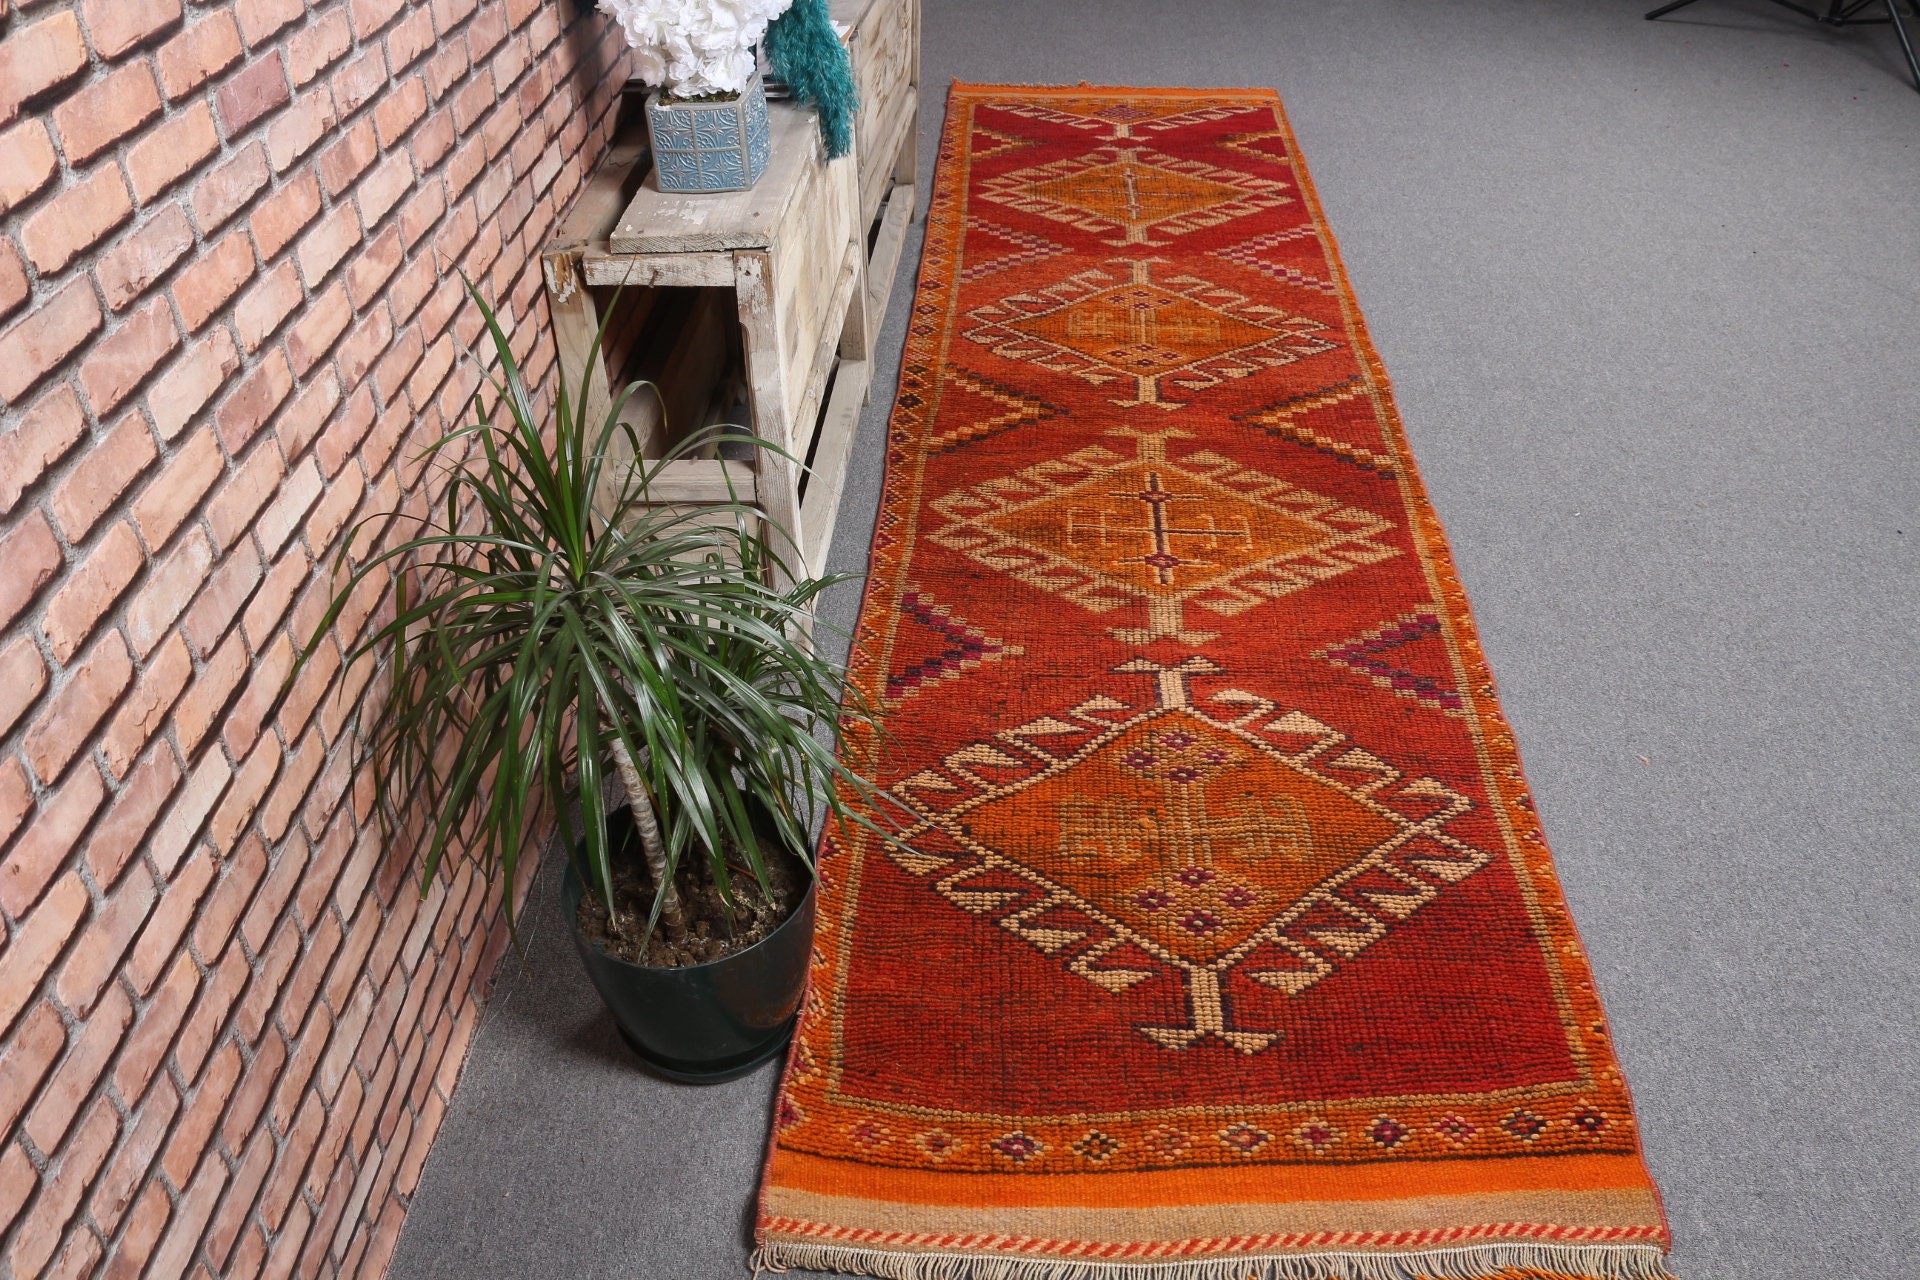 Antique Rugs, Floor Rugs, Vintage Rugs, Rugs for Runner, Corridor Rug, 2.8x11 ft Runner Rug, Red Moroccan Rug, Kitchen Rug, Turkish Rug